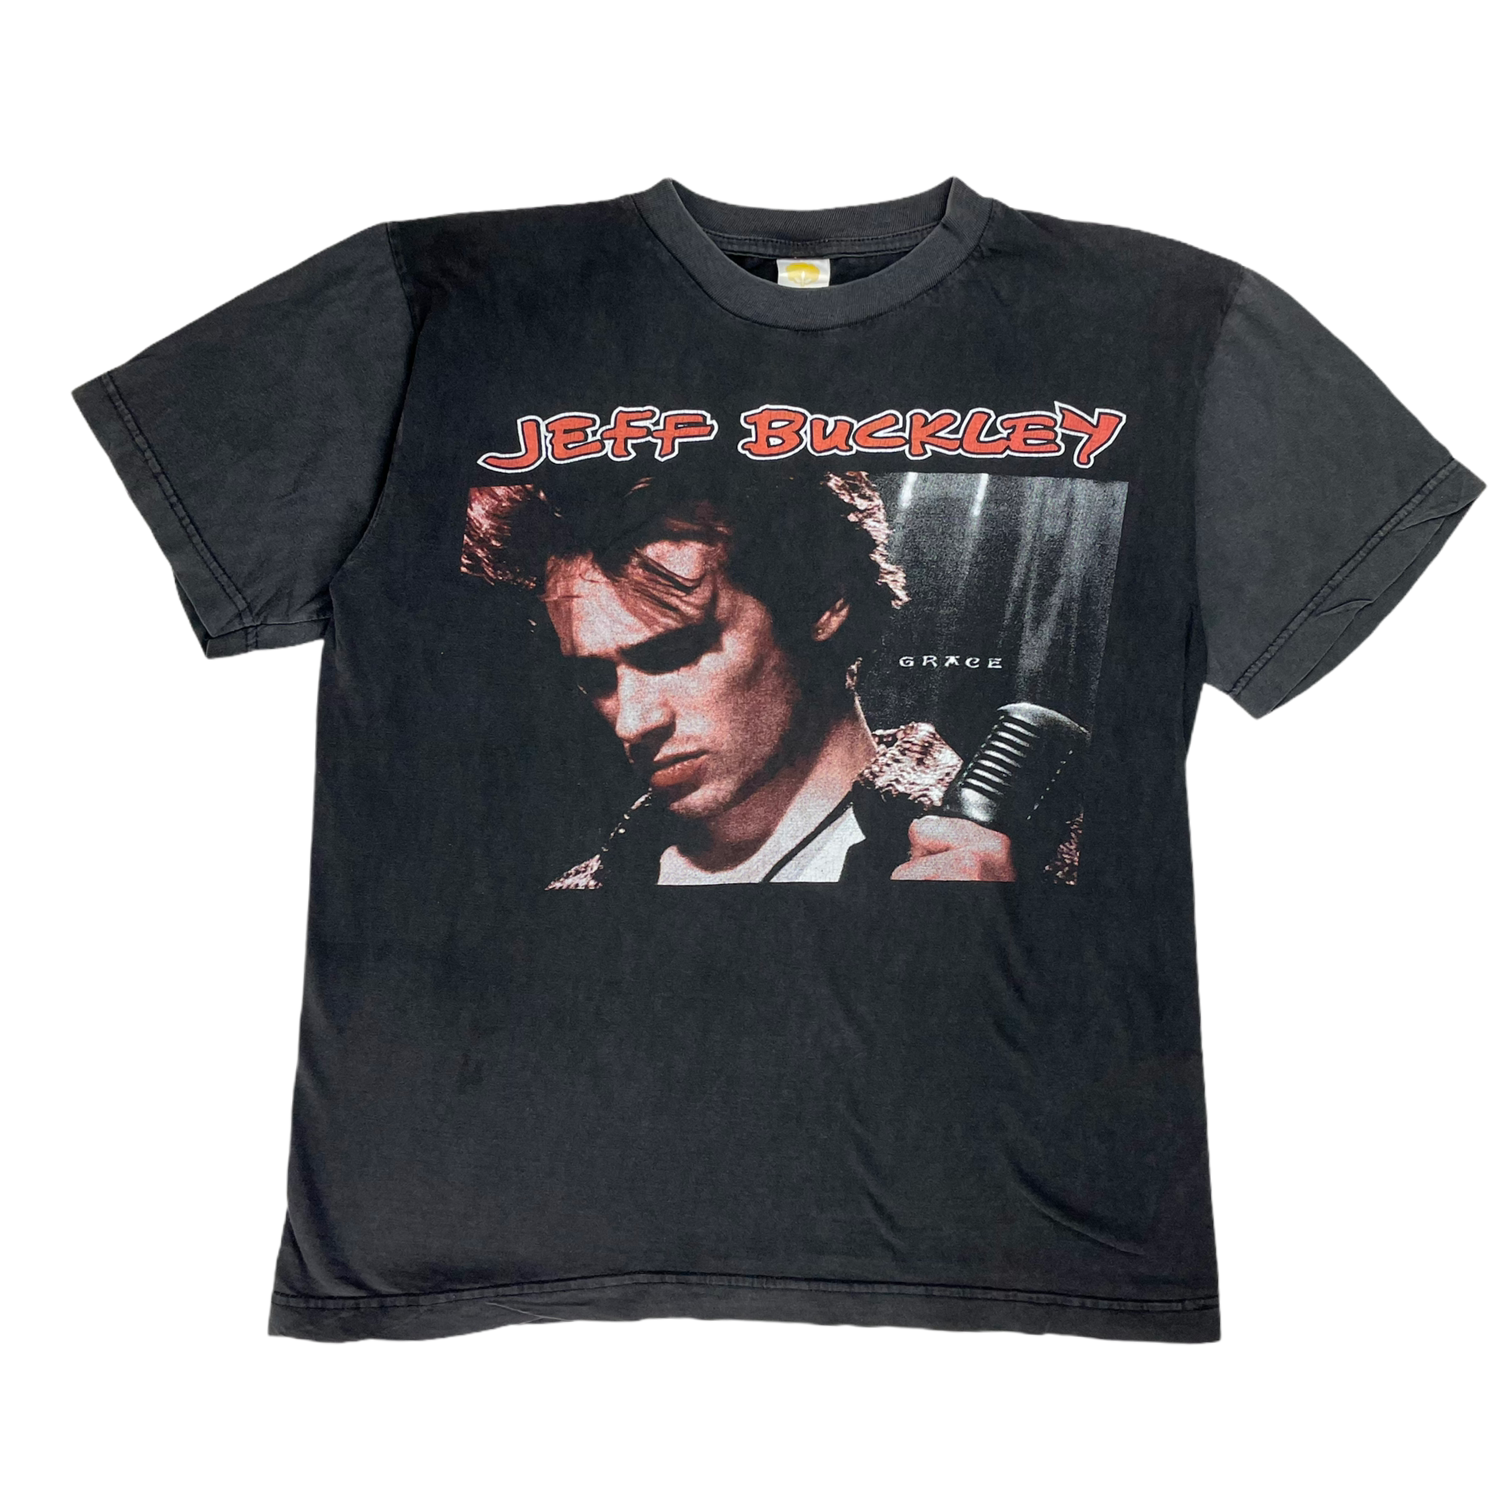 Vintage Jeff Buckley 95 T-shirt - Restorecph